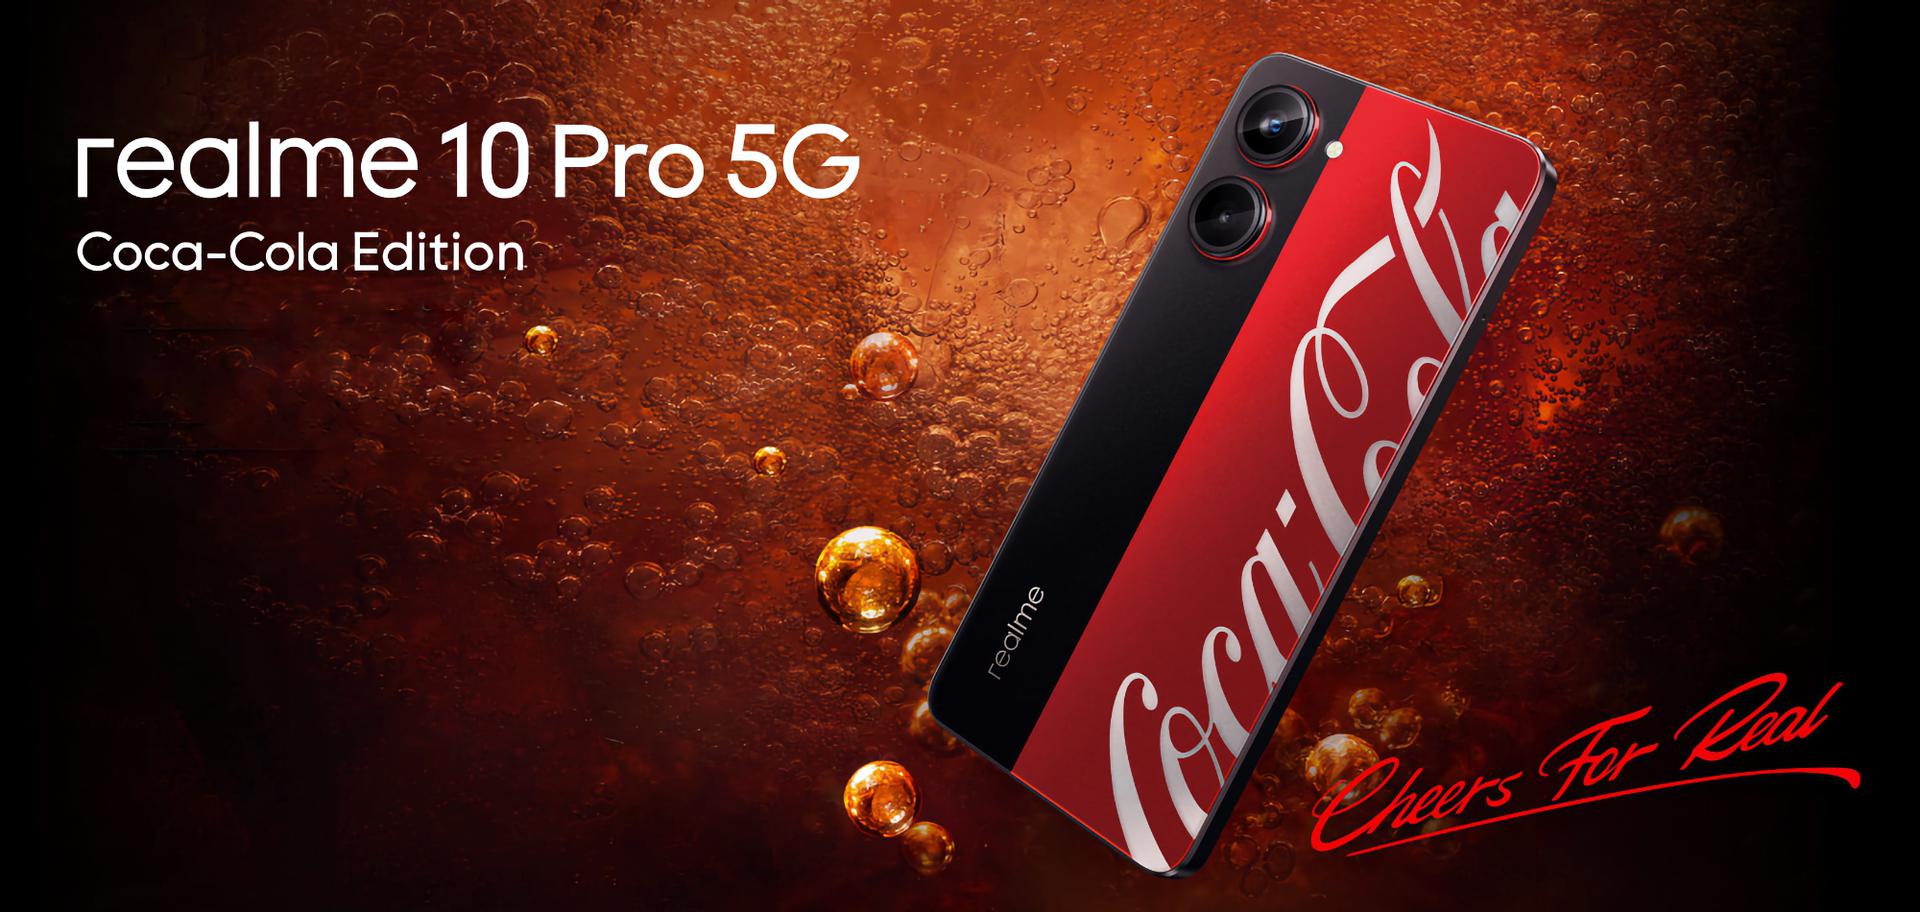 Інсайдер показав на відео realme 10 Pro 5G Coca Cola Edition: спеціальну версію смартфона realme 10 Pro 5G з екраном на 120 Гц і чипом Snapdragon 695